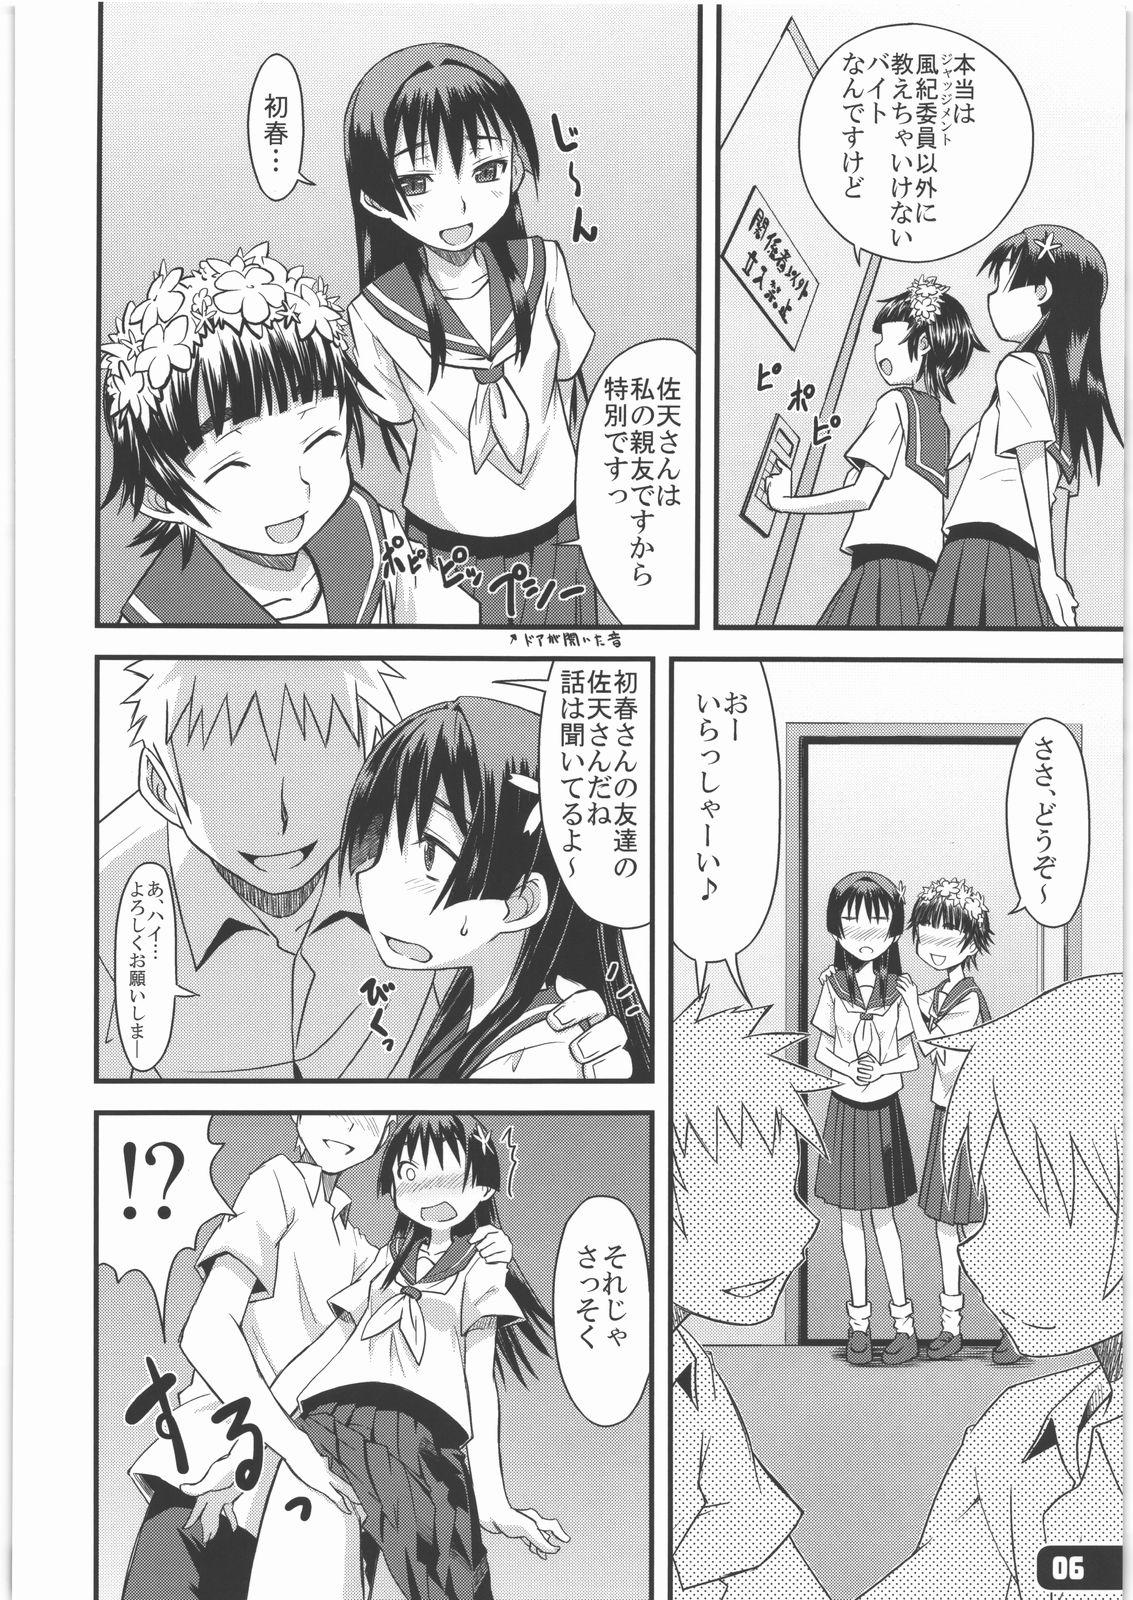 Gemendo Flower Girls - Toaru kagaku no railgun Large - Page 5